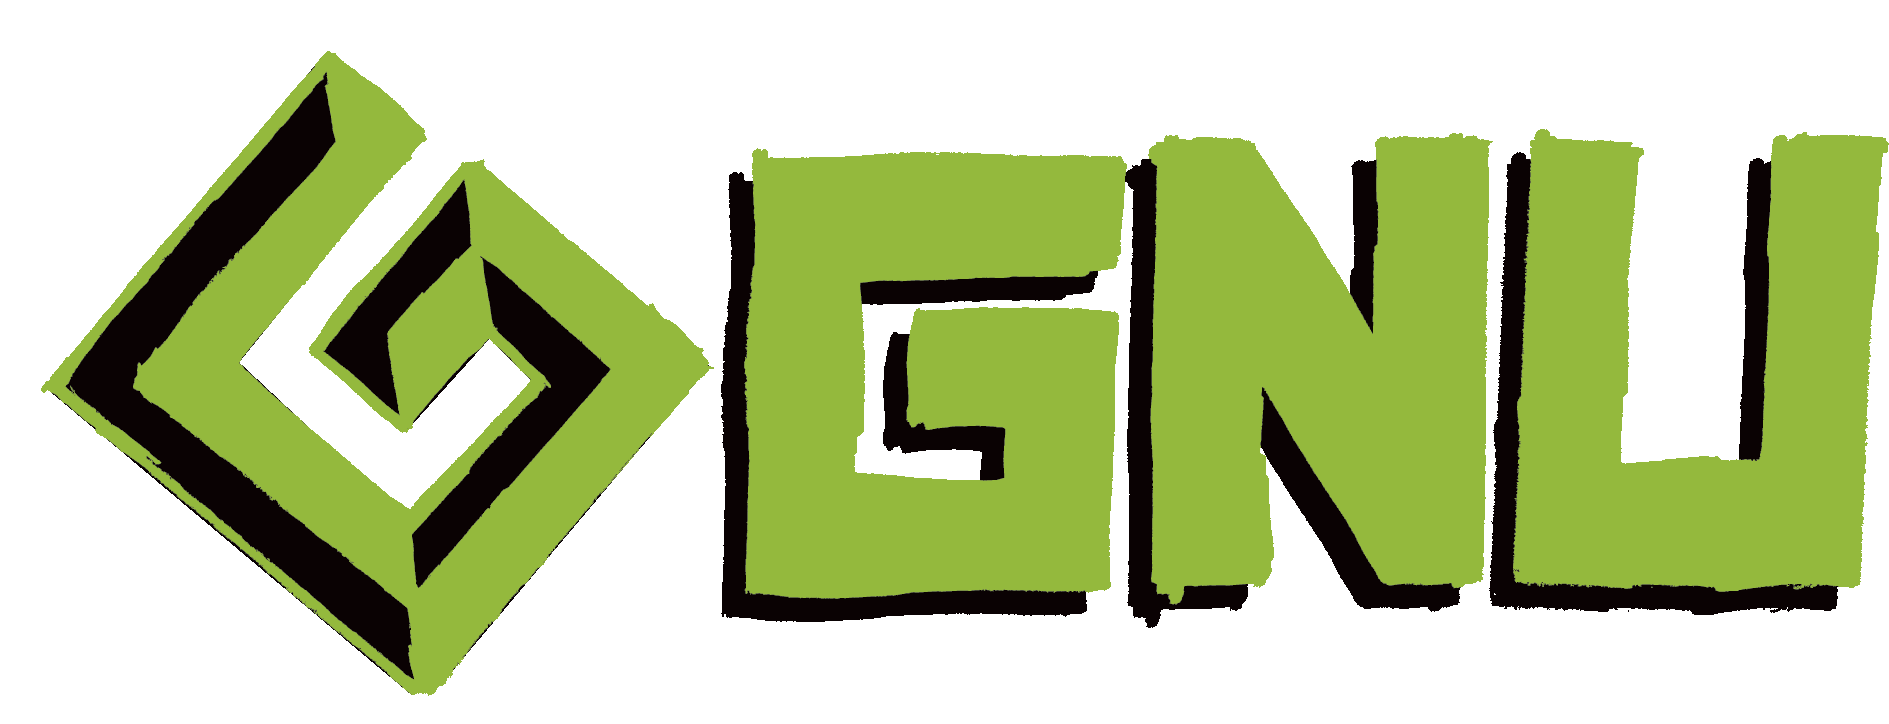 GNU Company Logos